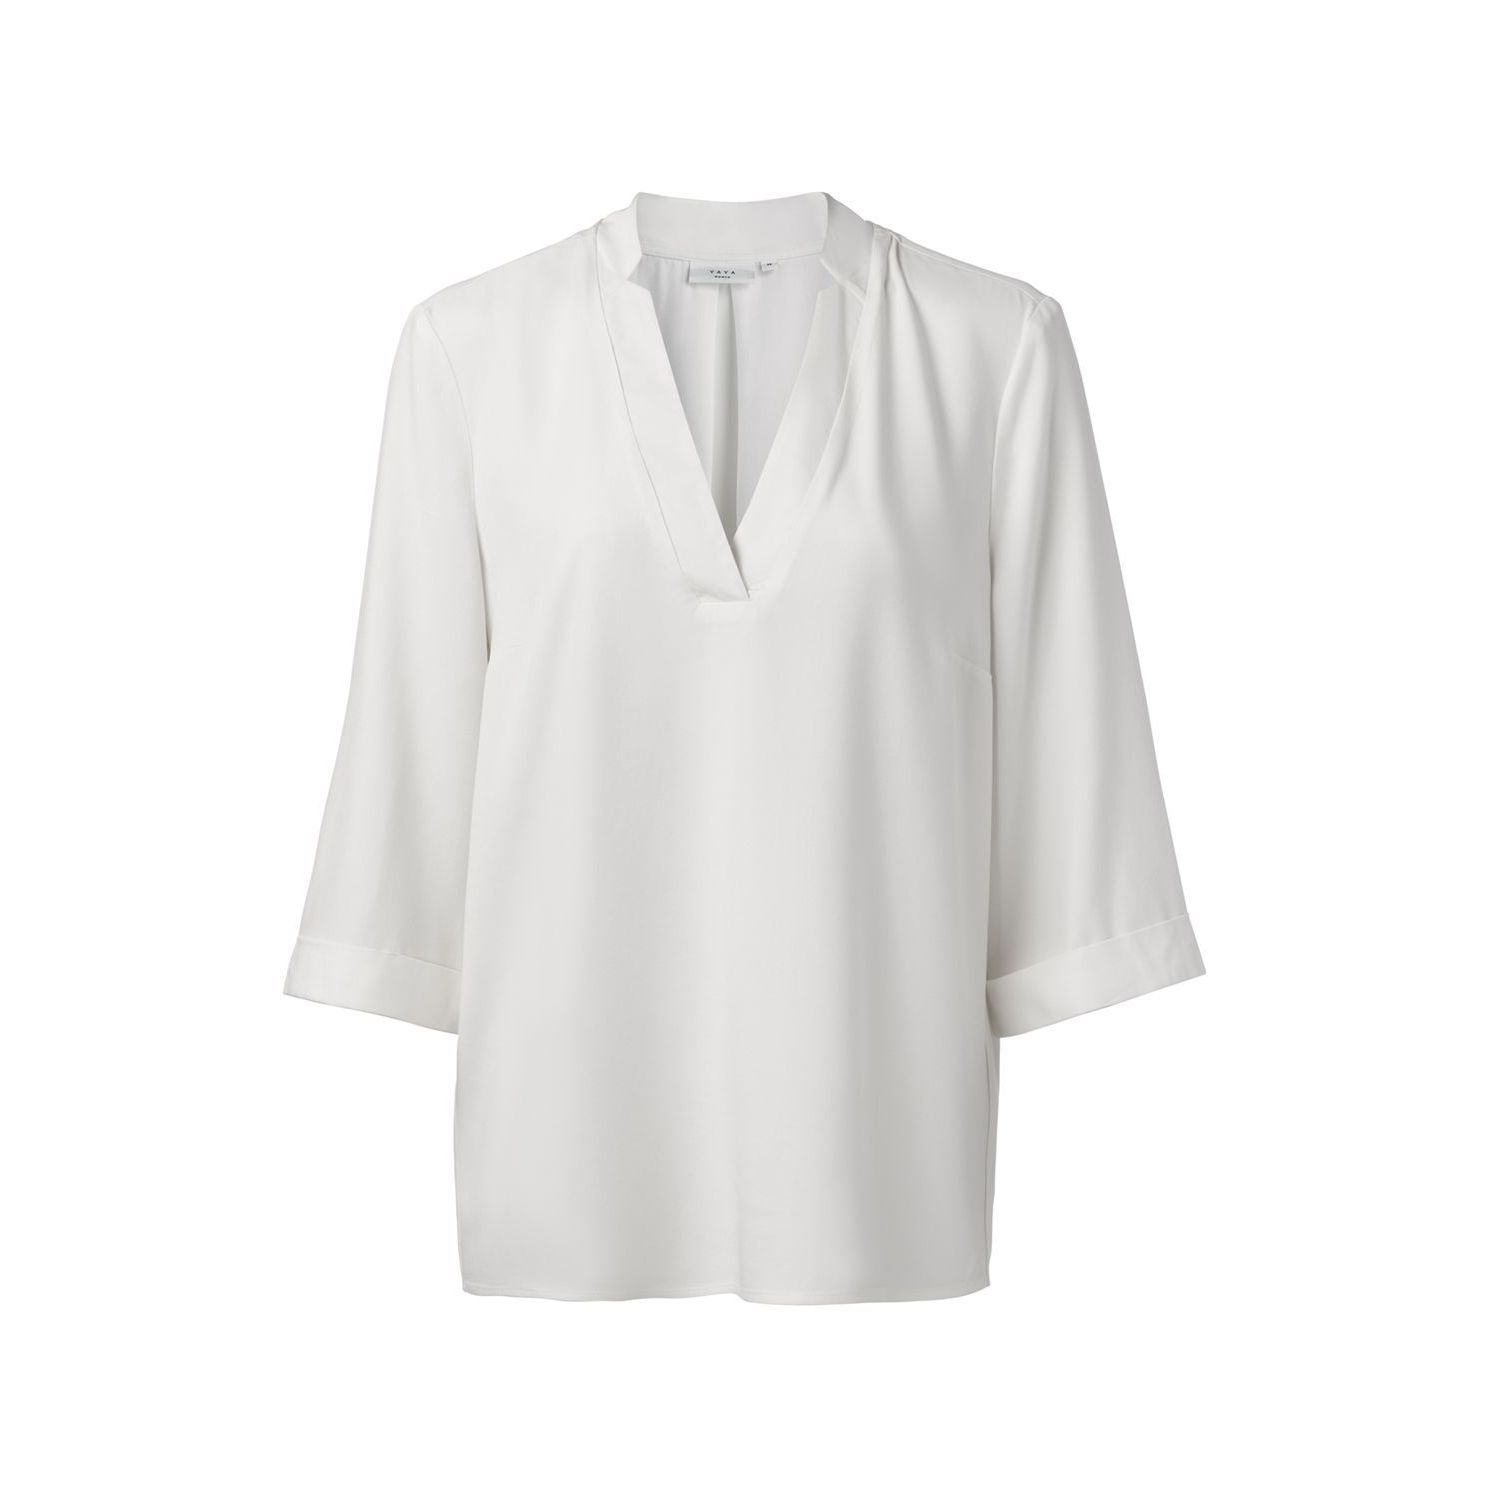 Yaya v-neck blouse with 3/4 sleeves off white